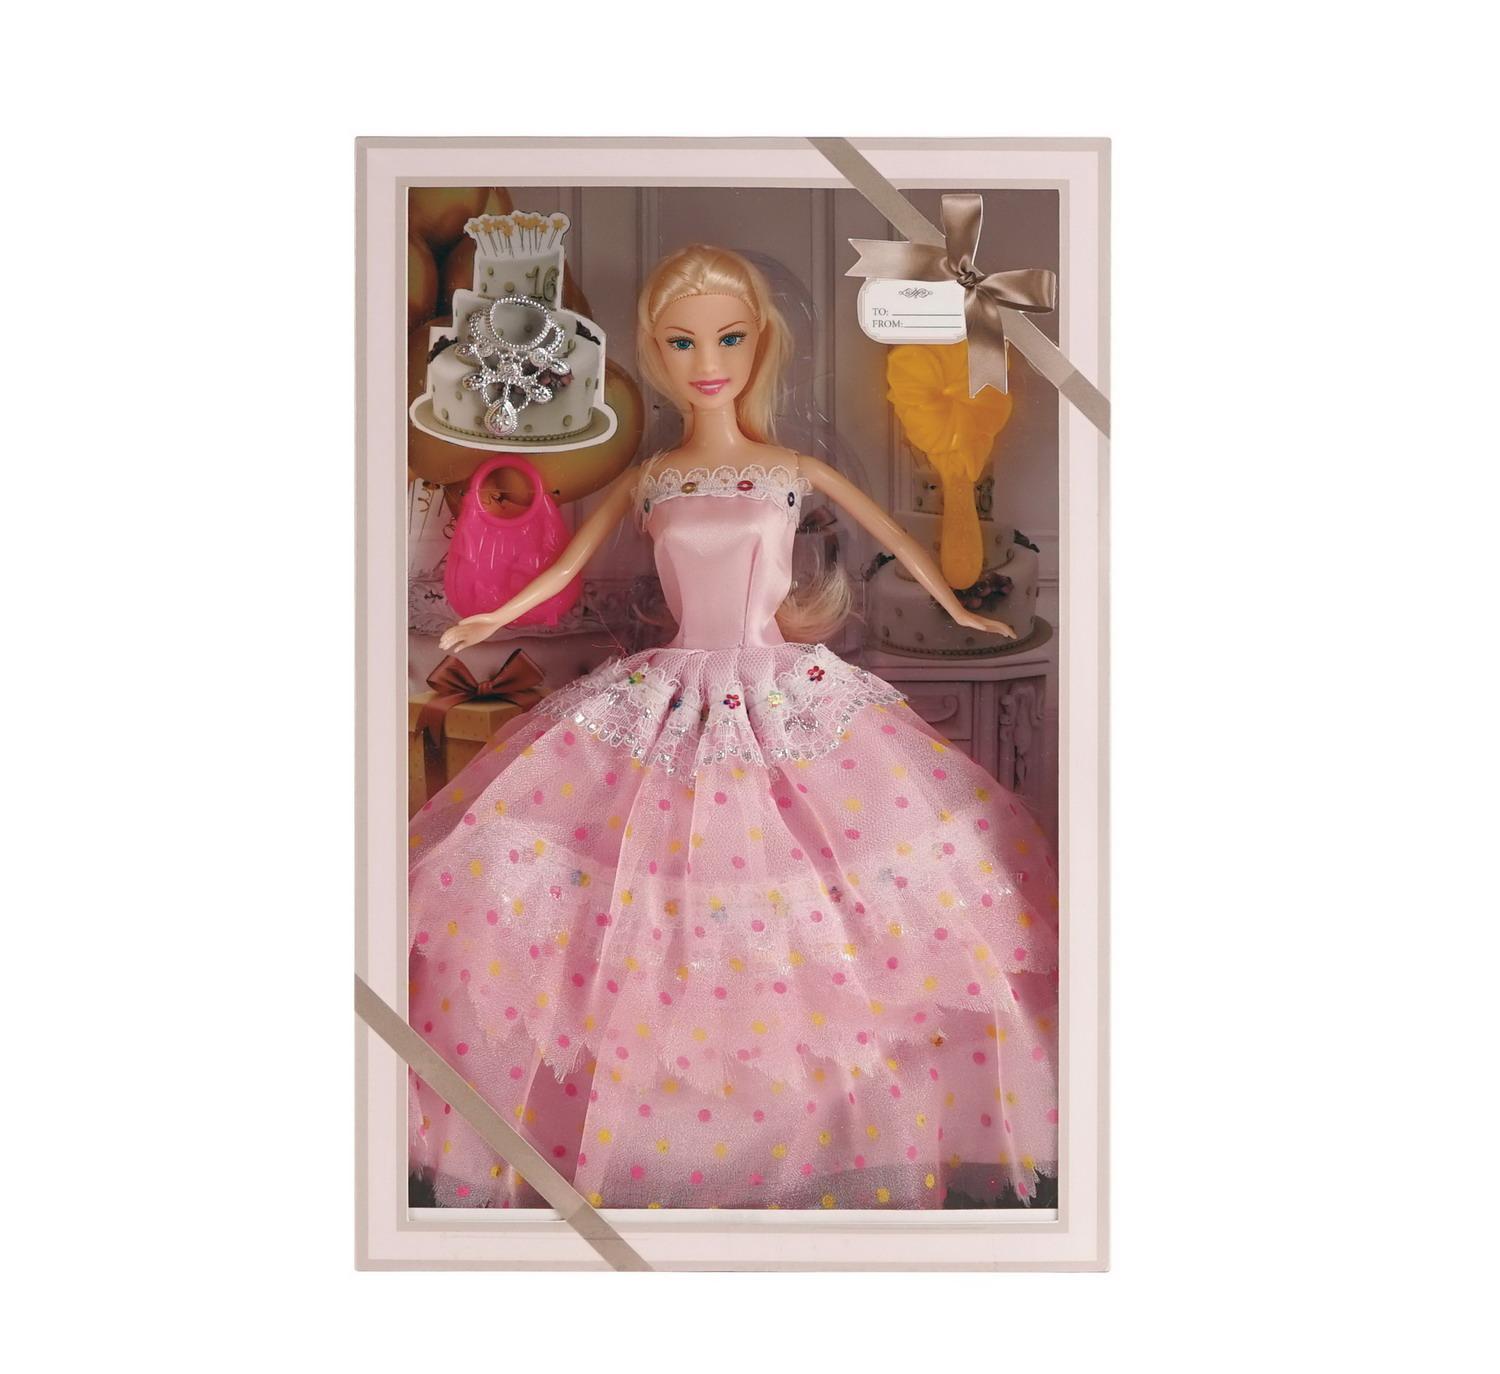 Купить Кукла Junfa Atinil в длинном платье в наборе c ожерельем 28см WJ-21531, Junfa toys,